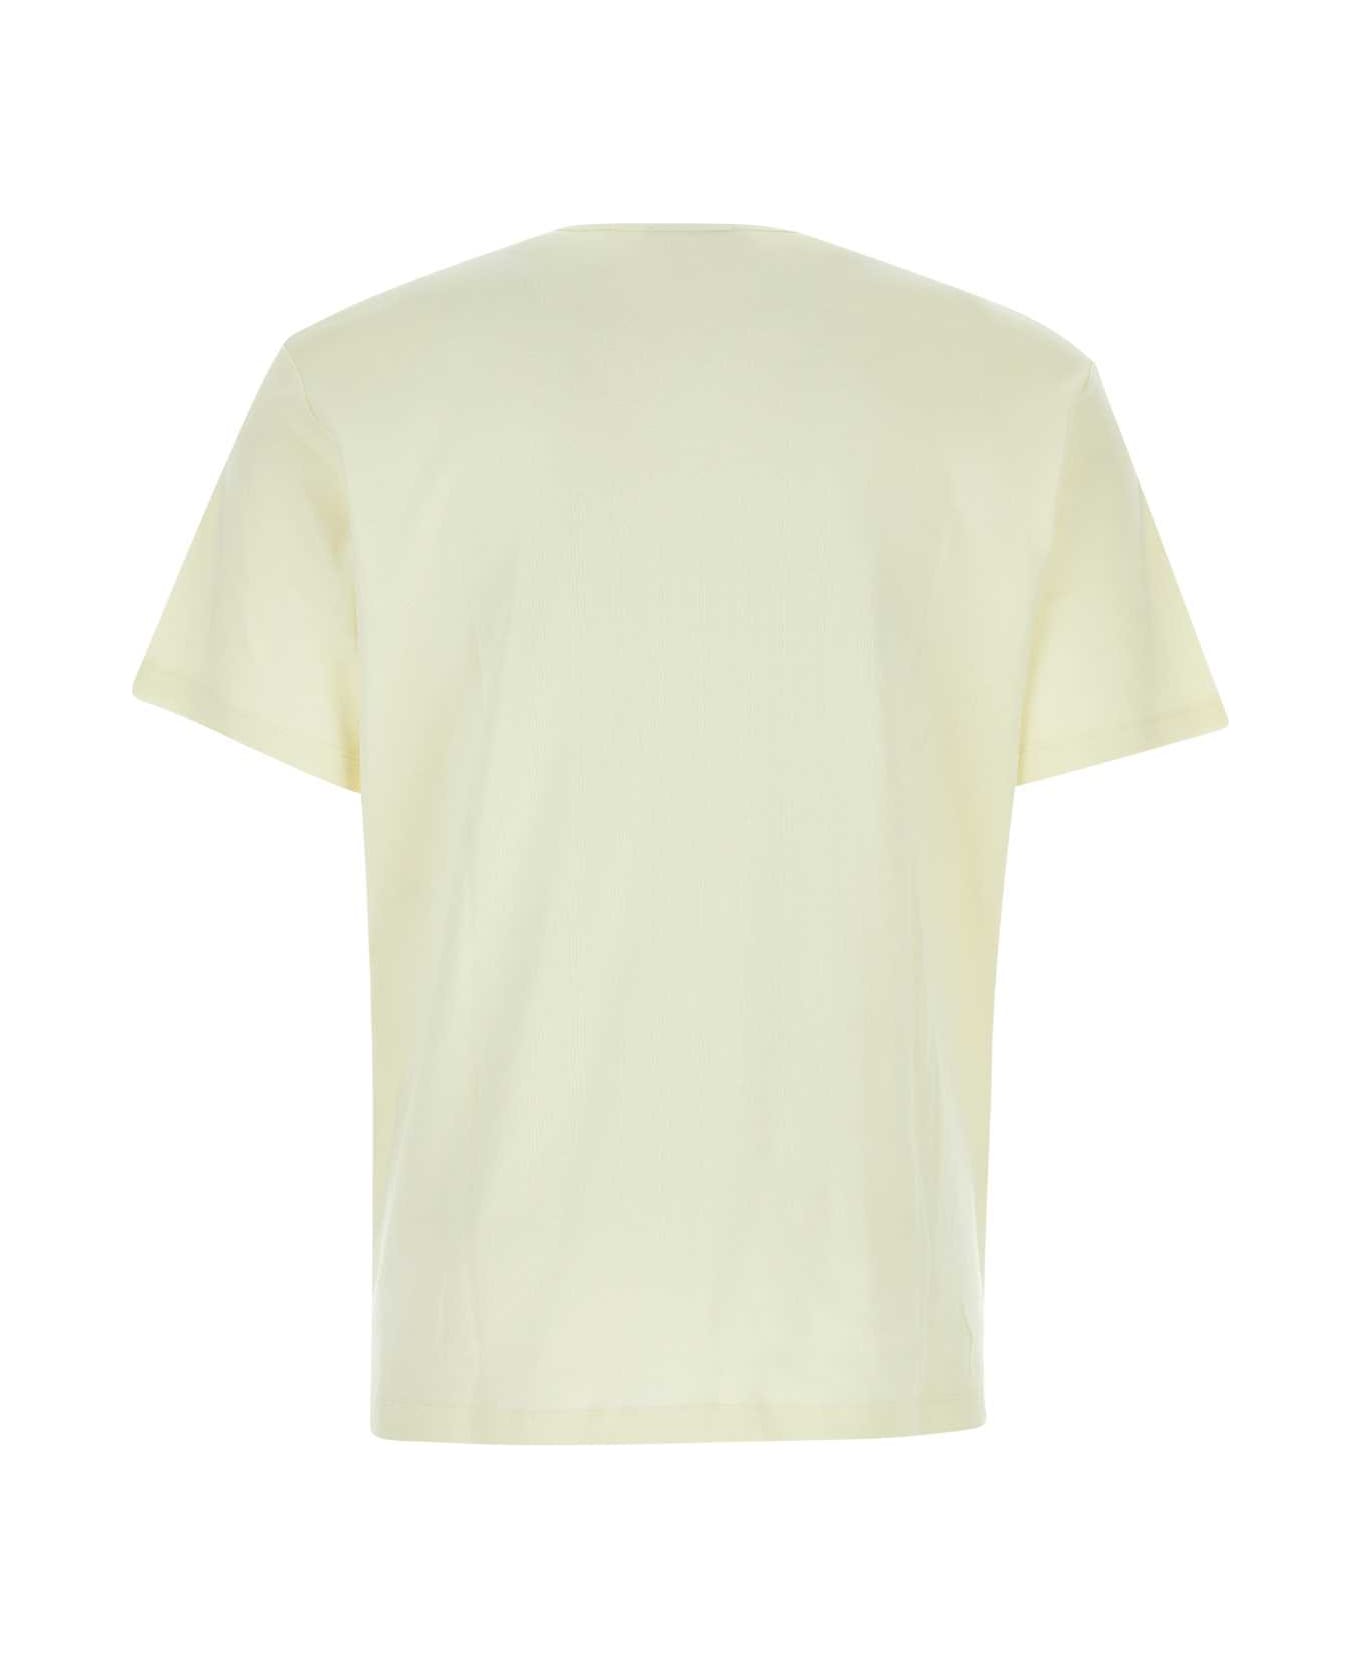 Lemaire Cream Cotton T-shirt - LEMGLA シャツ